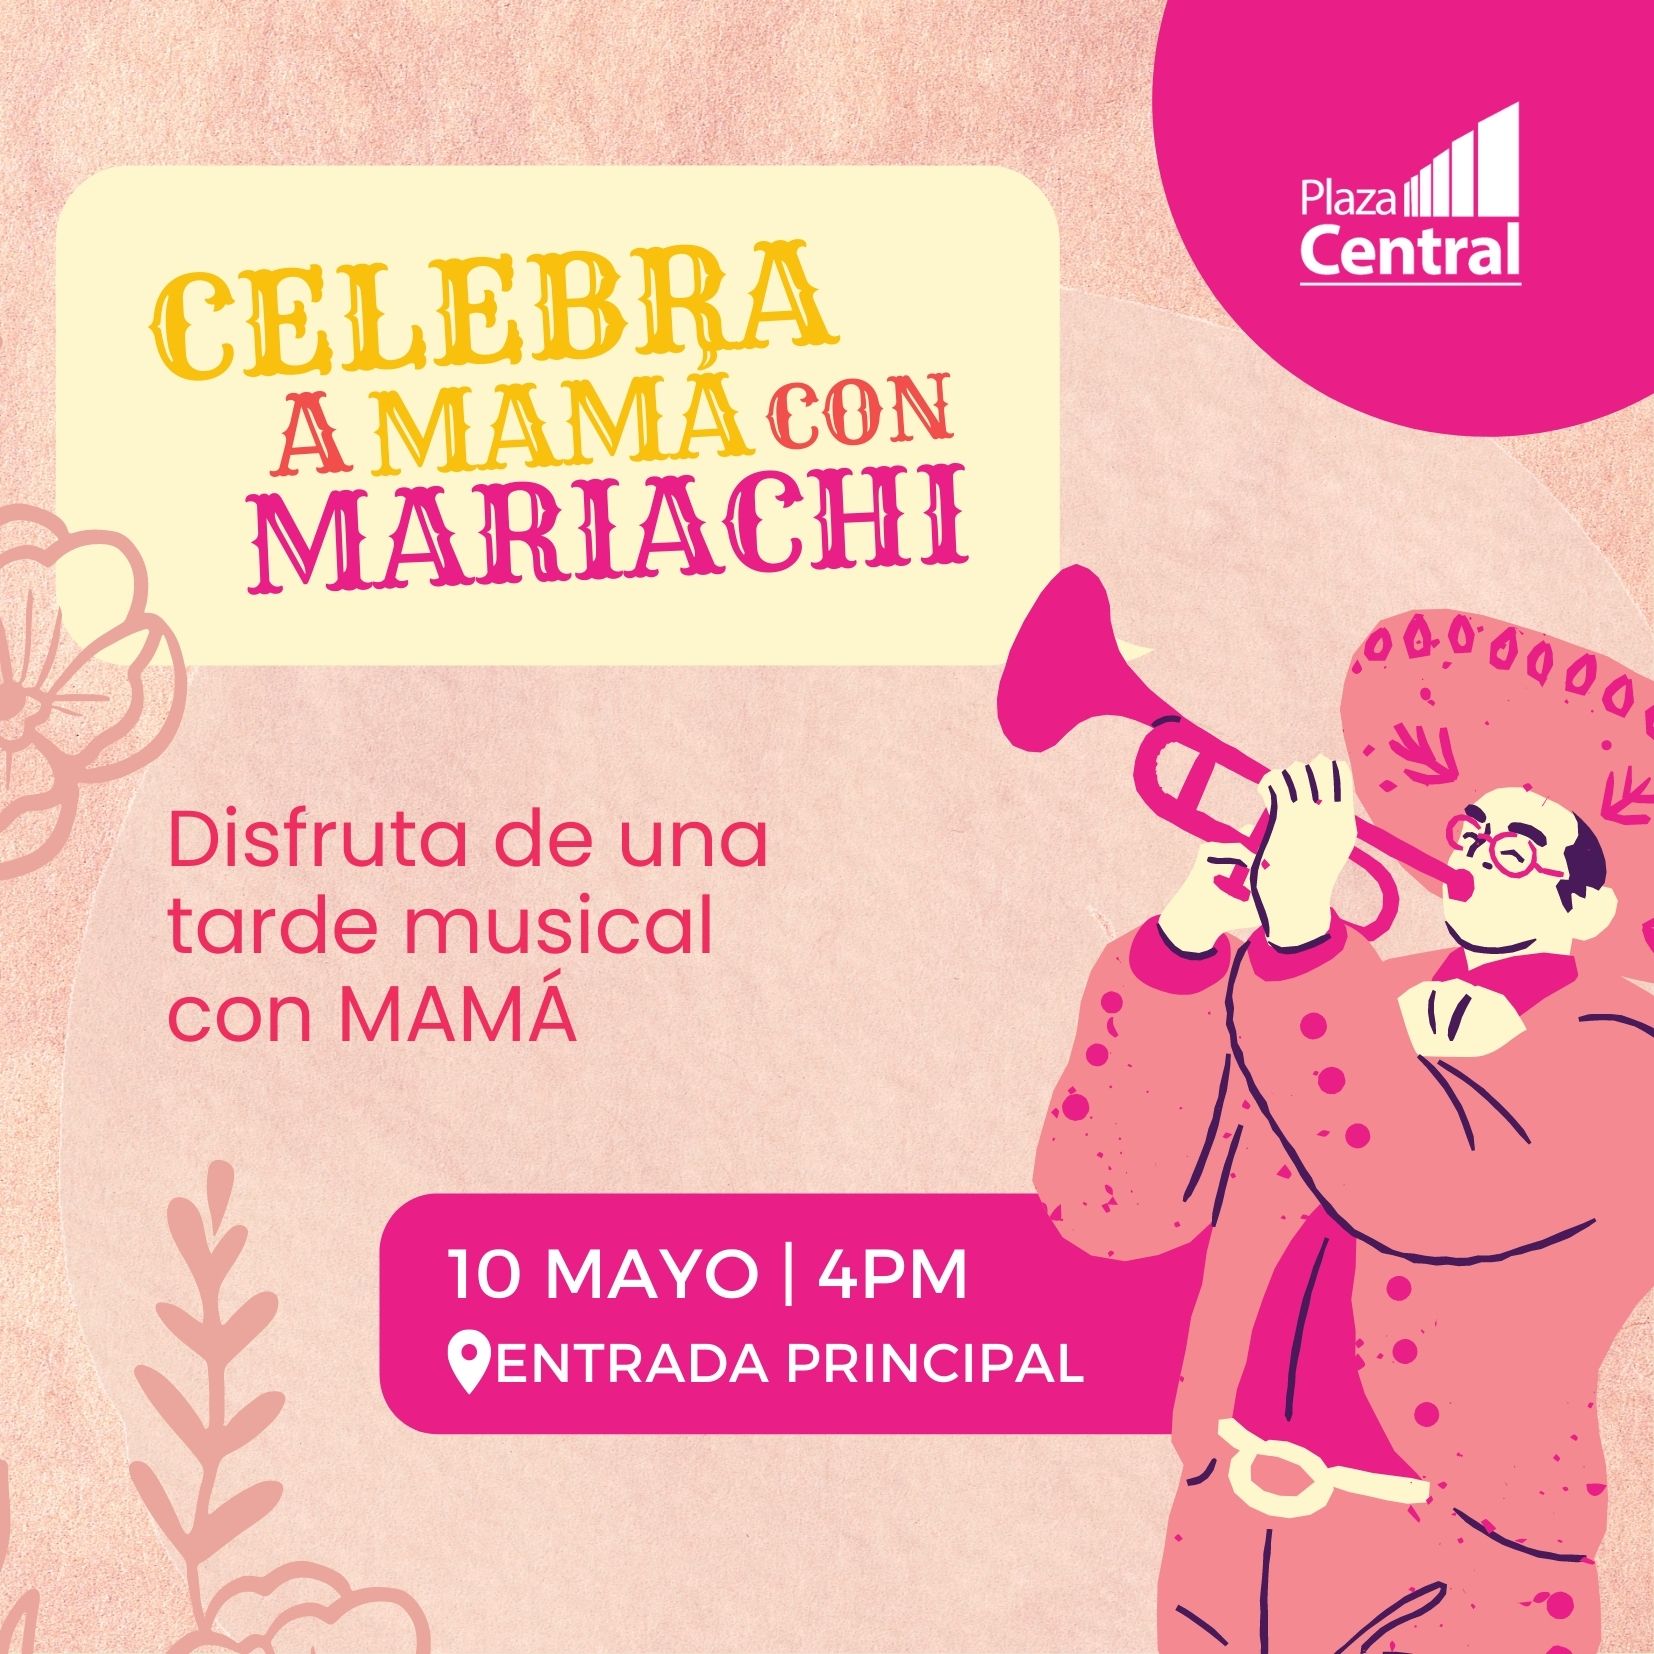 Las Plazas Outlet Lerma - Celebra a Mamá con Mariachi  